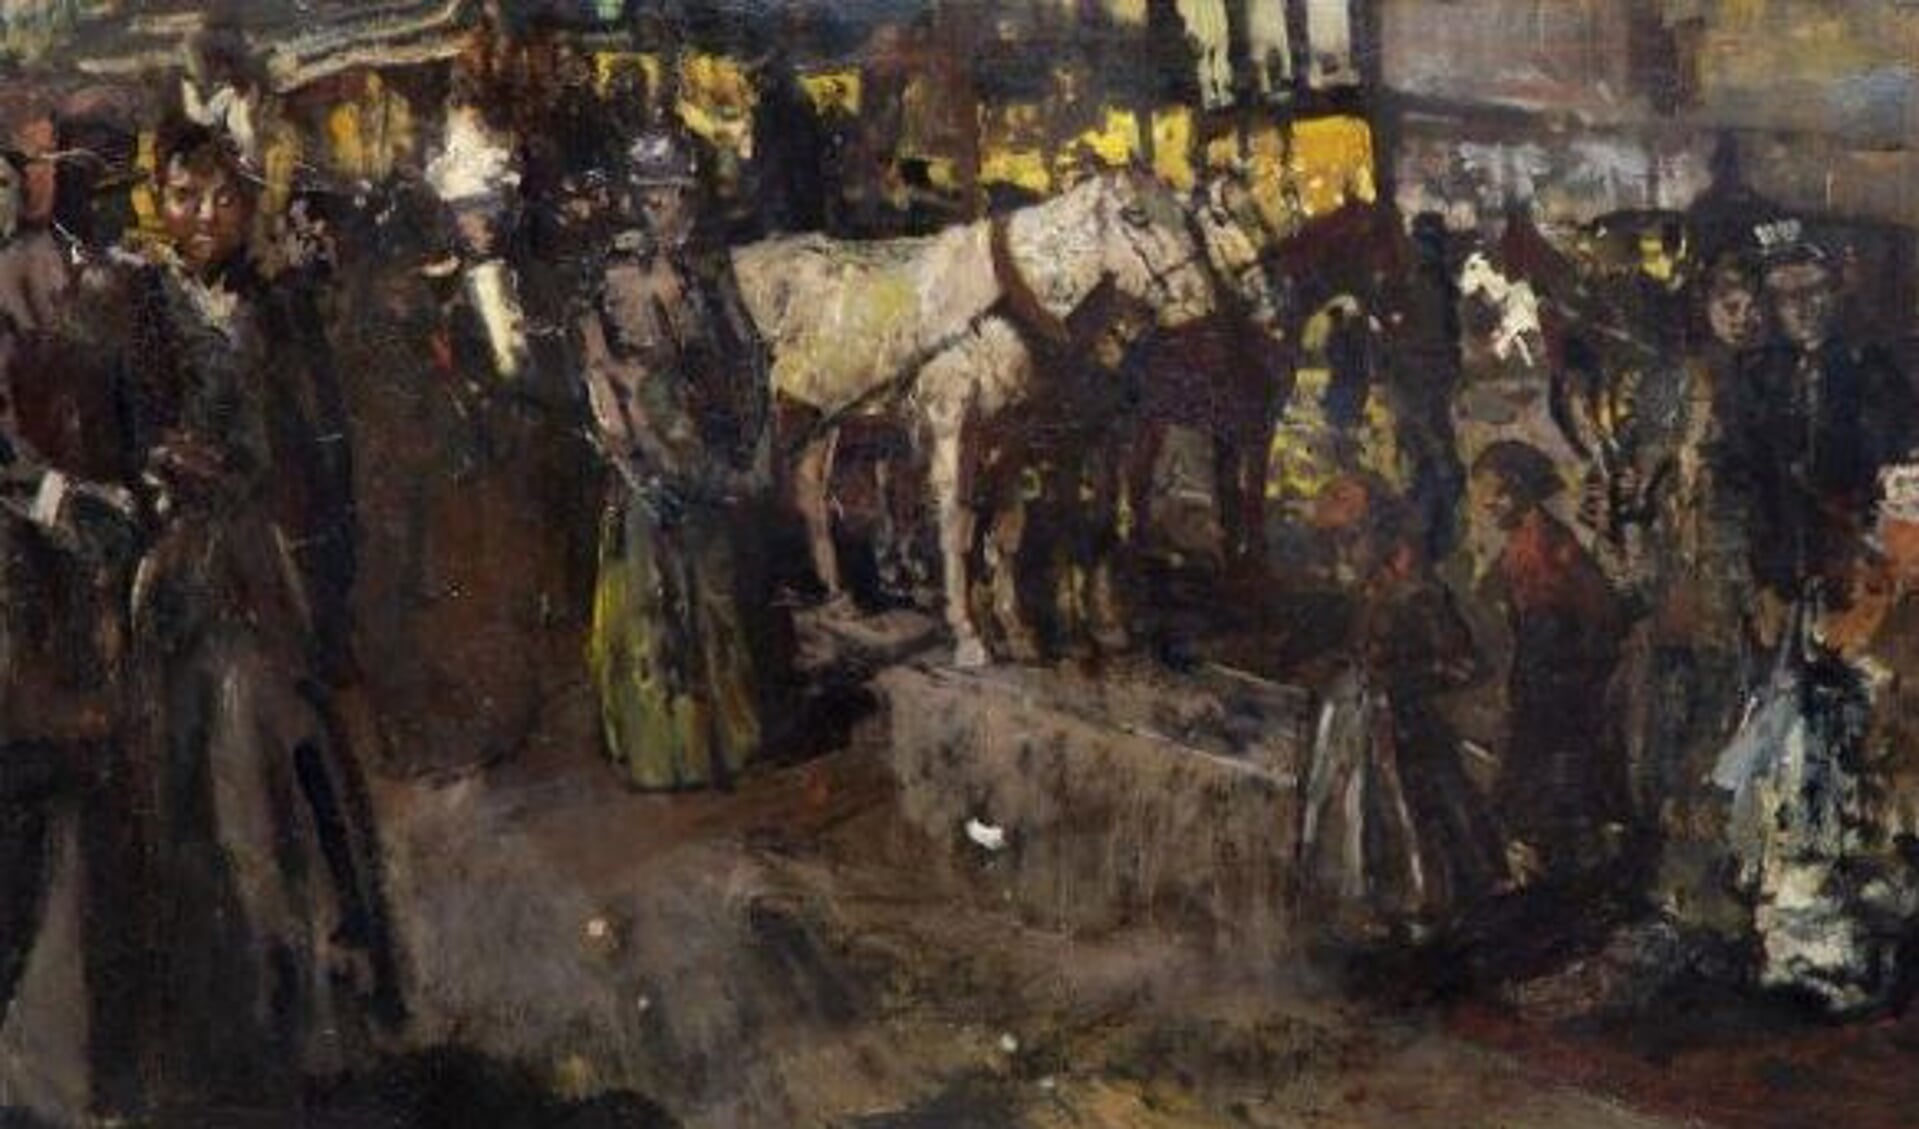 George Hendrik Breitner (1857-1923), De Dam bij avond, olieverf op doek, 60 x 99 cm, Maarssen:
collectie Kunsthandel Pygmalion.